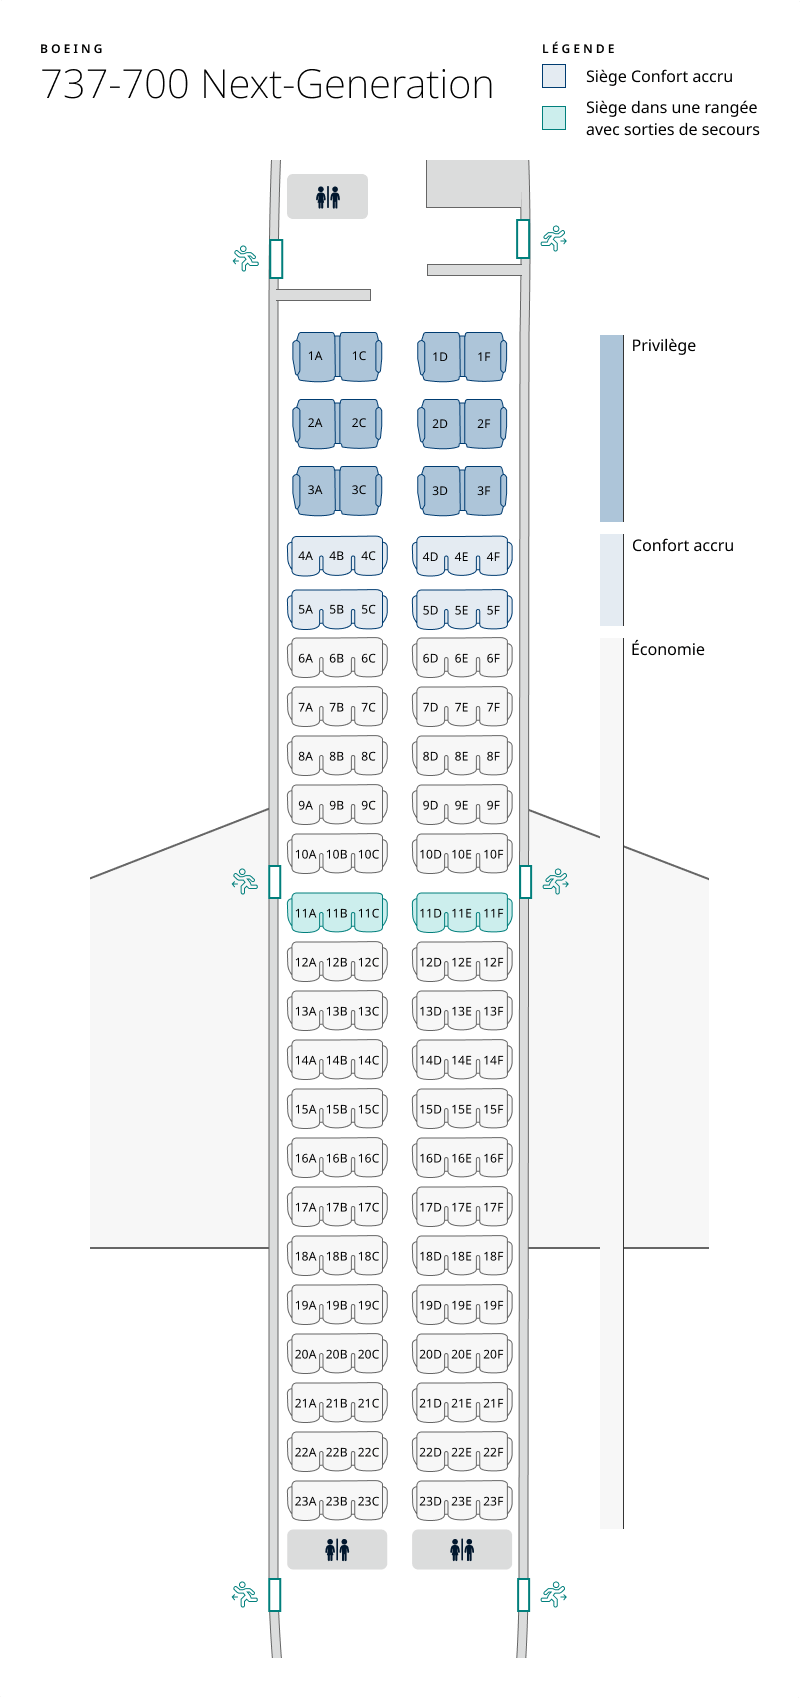 Plan de cabine de l’appareil 737-700. Les renseignements sur les sièges sont disponibles dans le tableau ci-dessous :